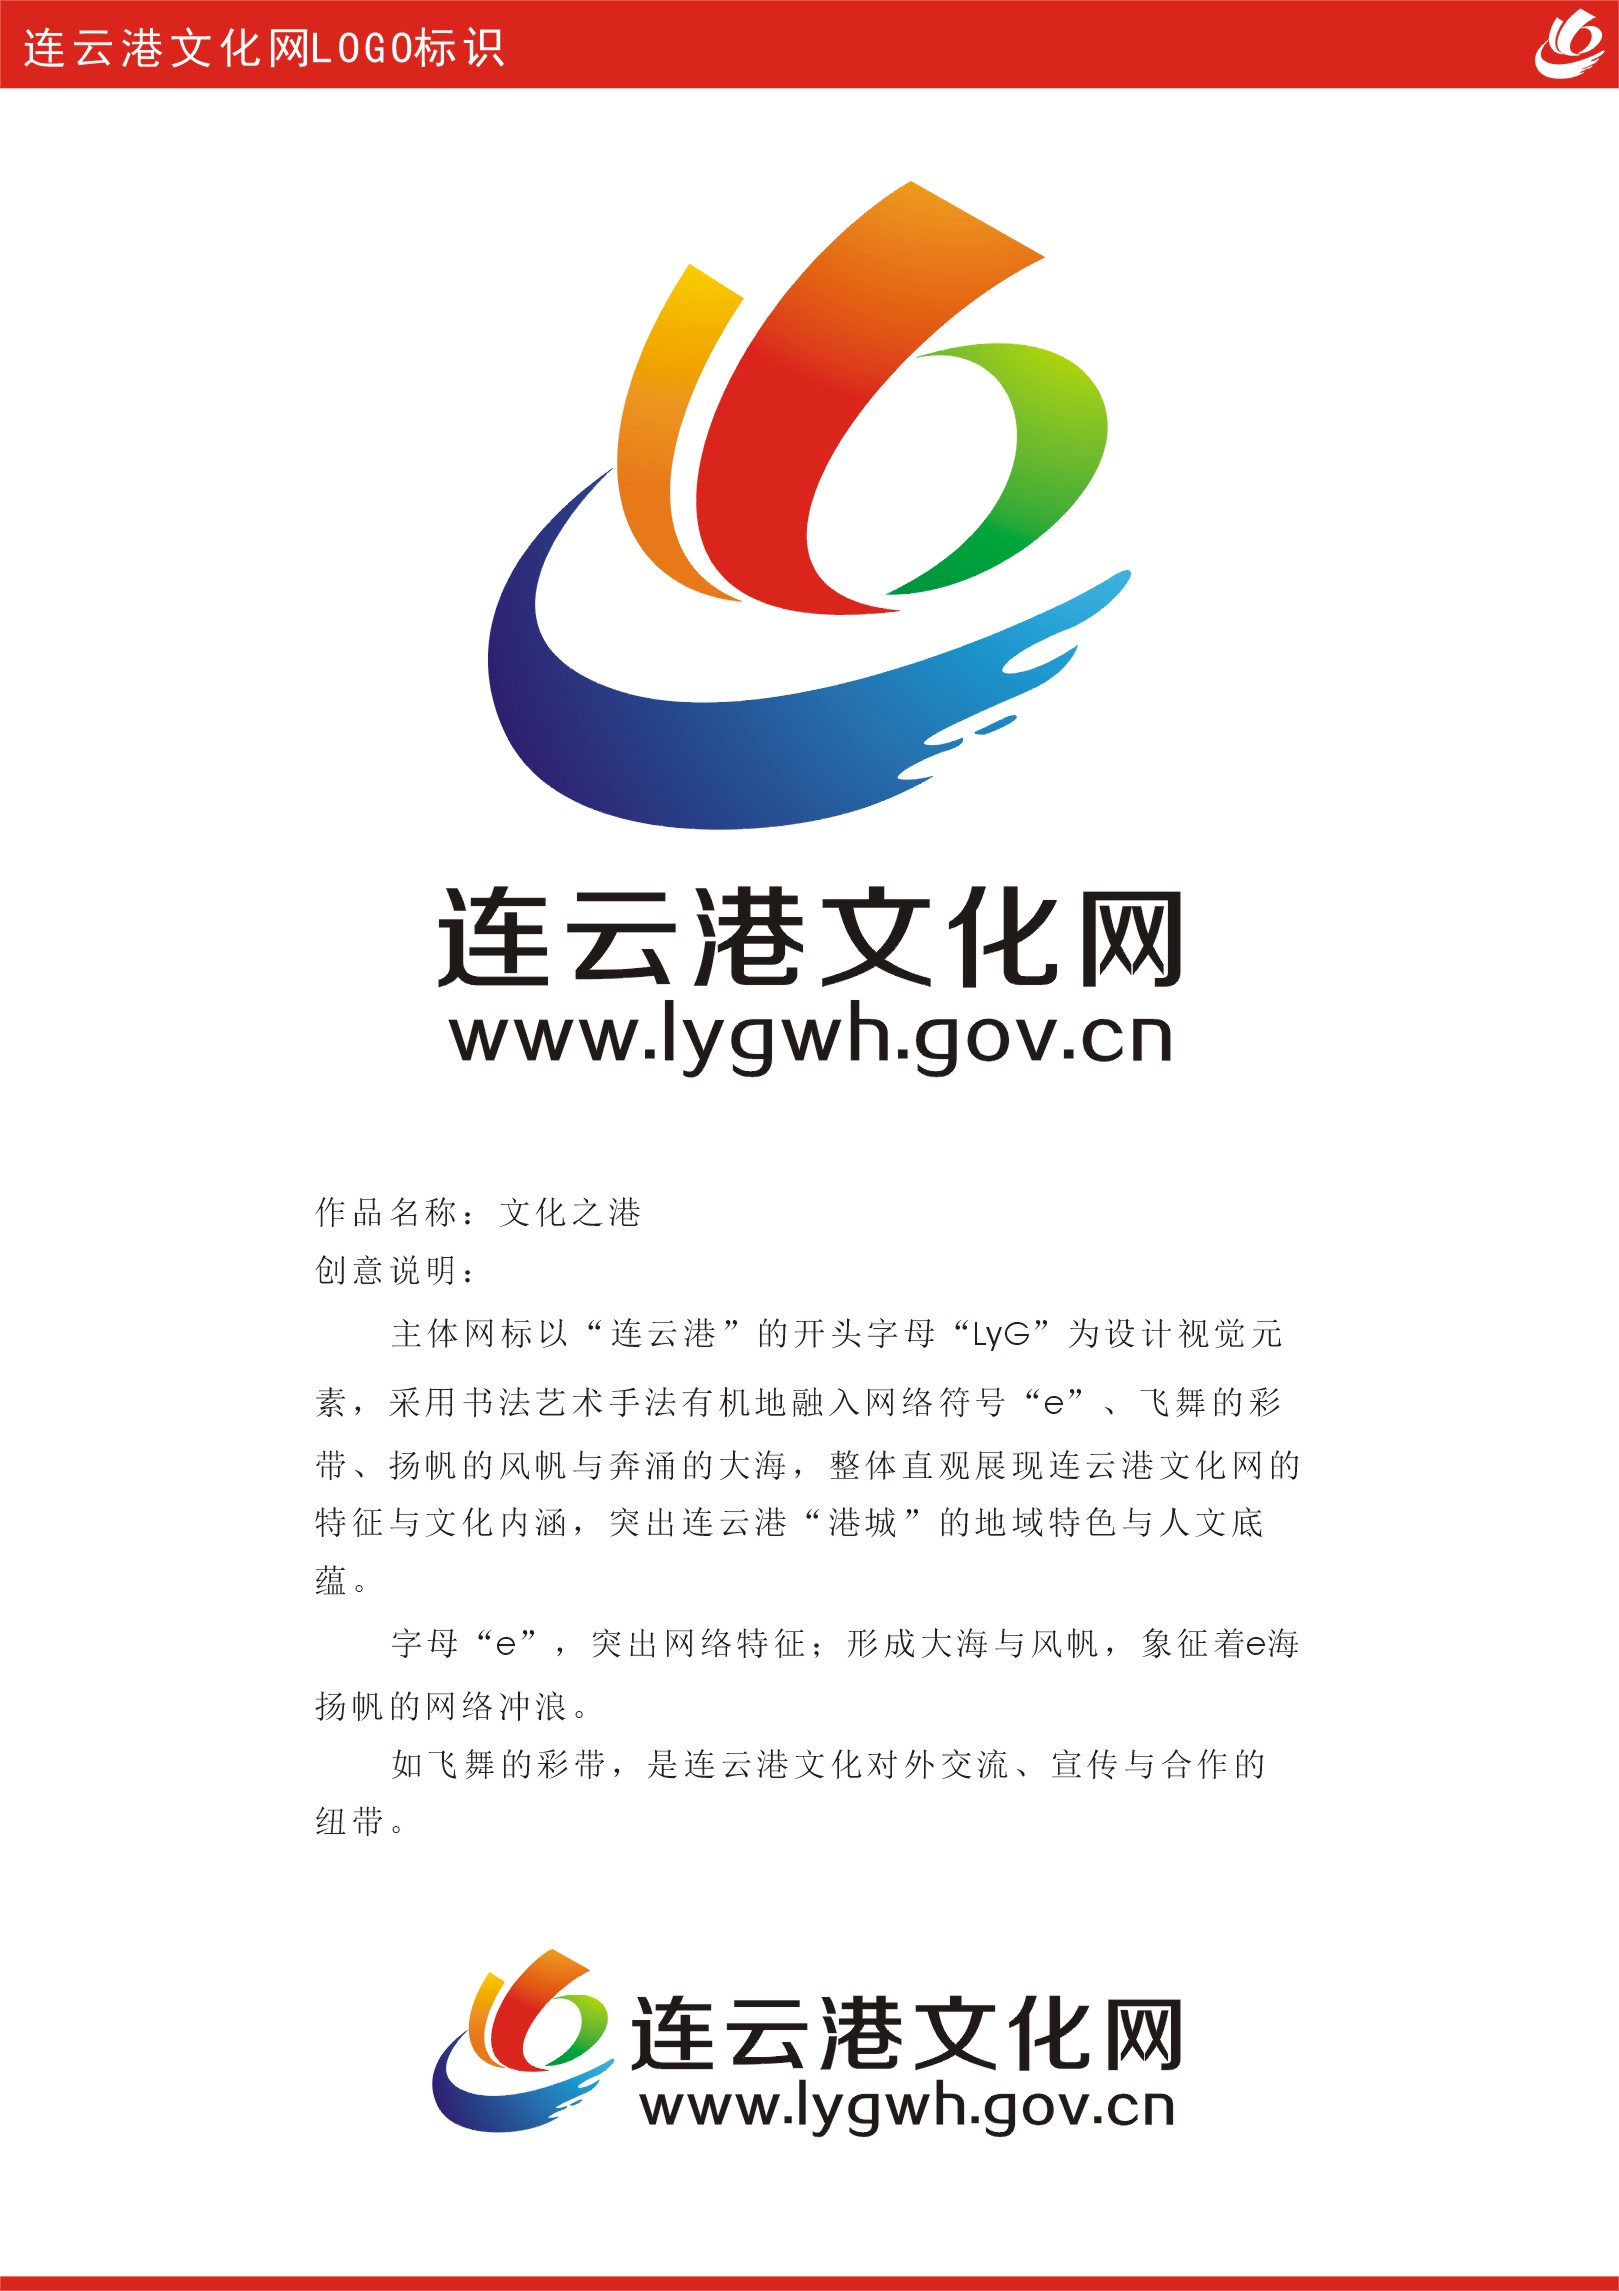 连云港文化网logo标识广告语有奖征集活动评选出结果